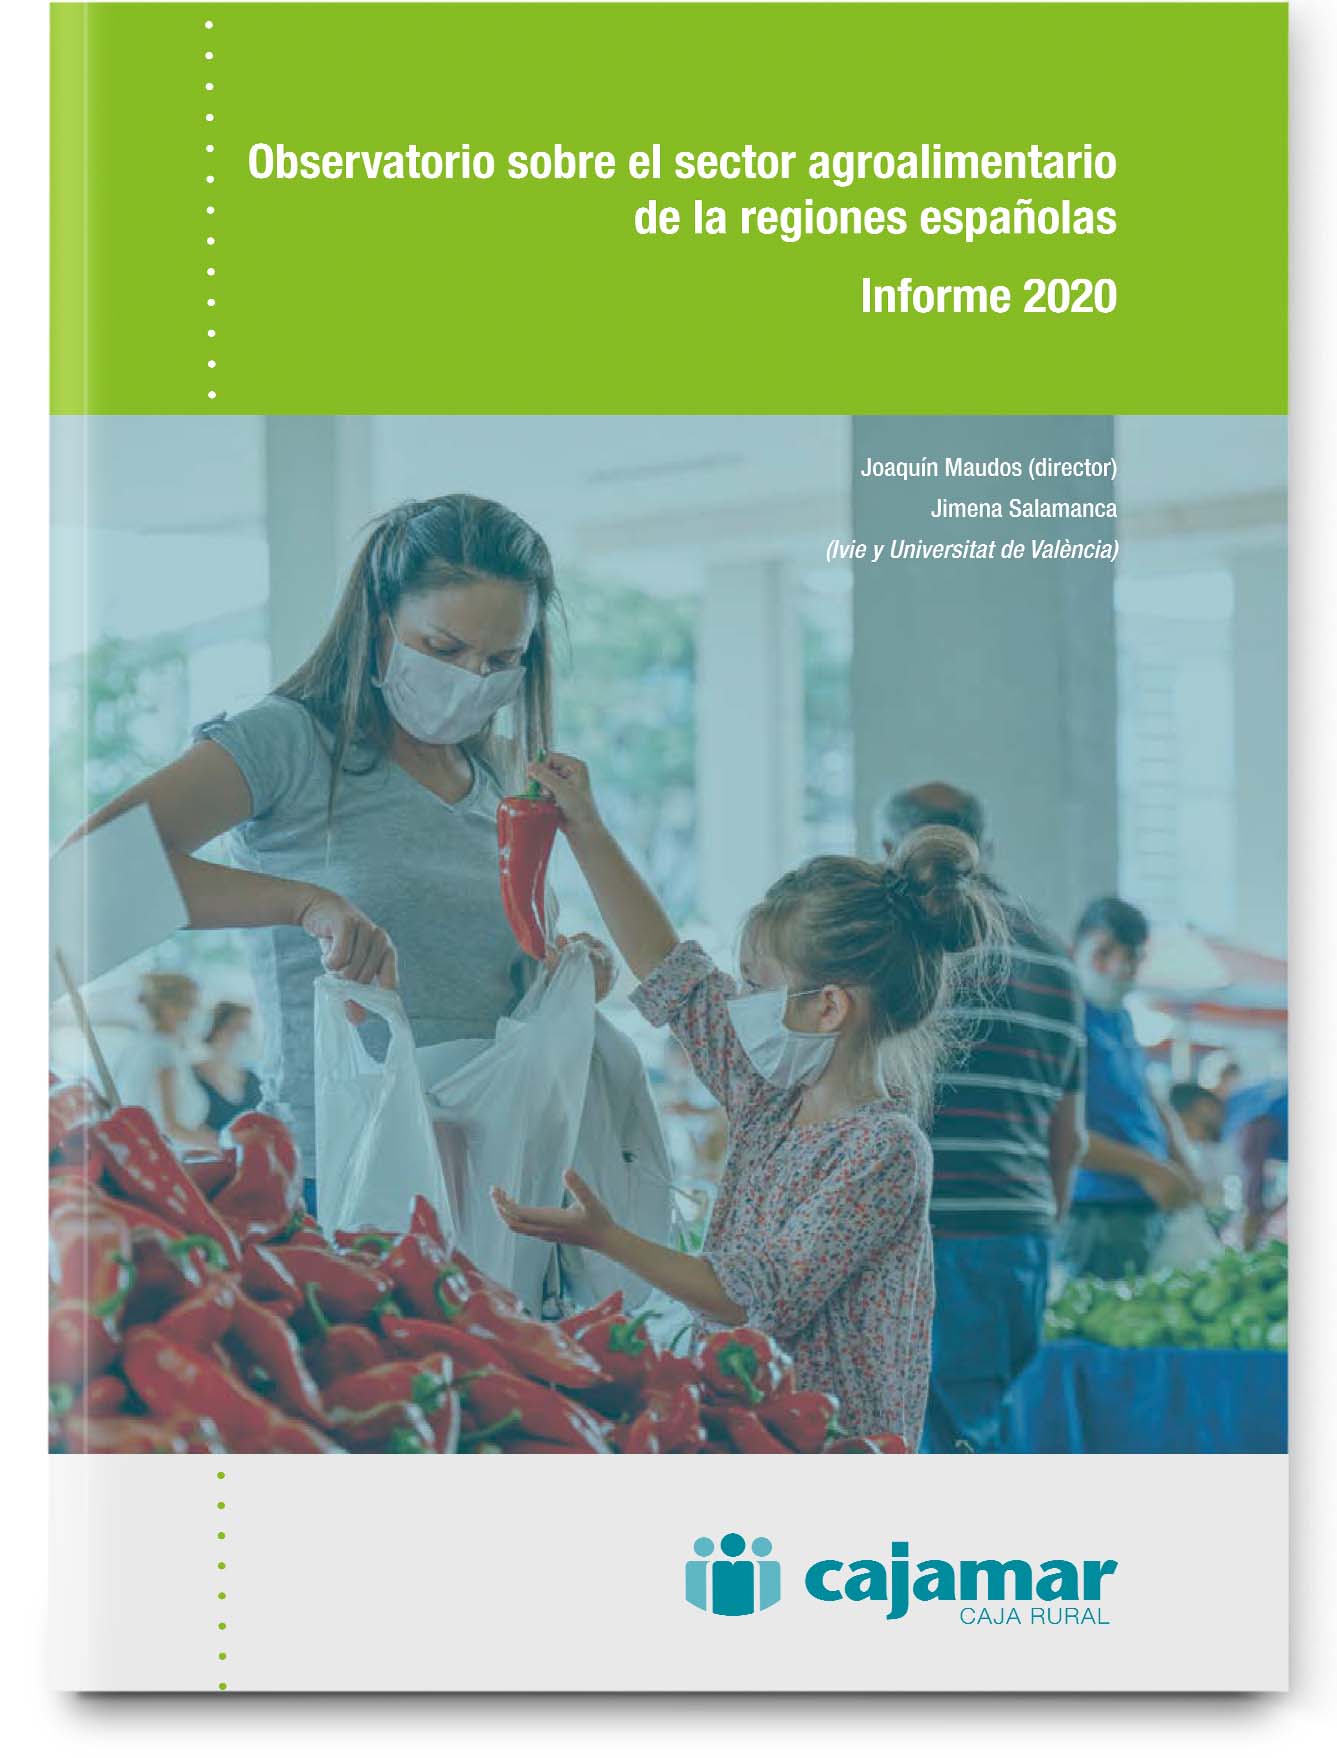 El sector agroalimentario español en el contexto de las regiones españolas. Informe 2020